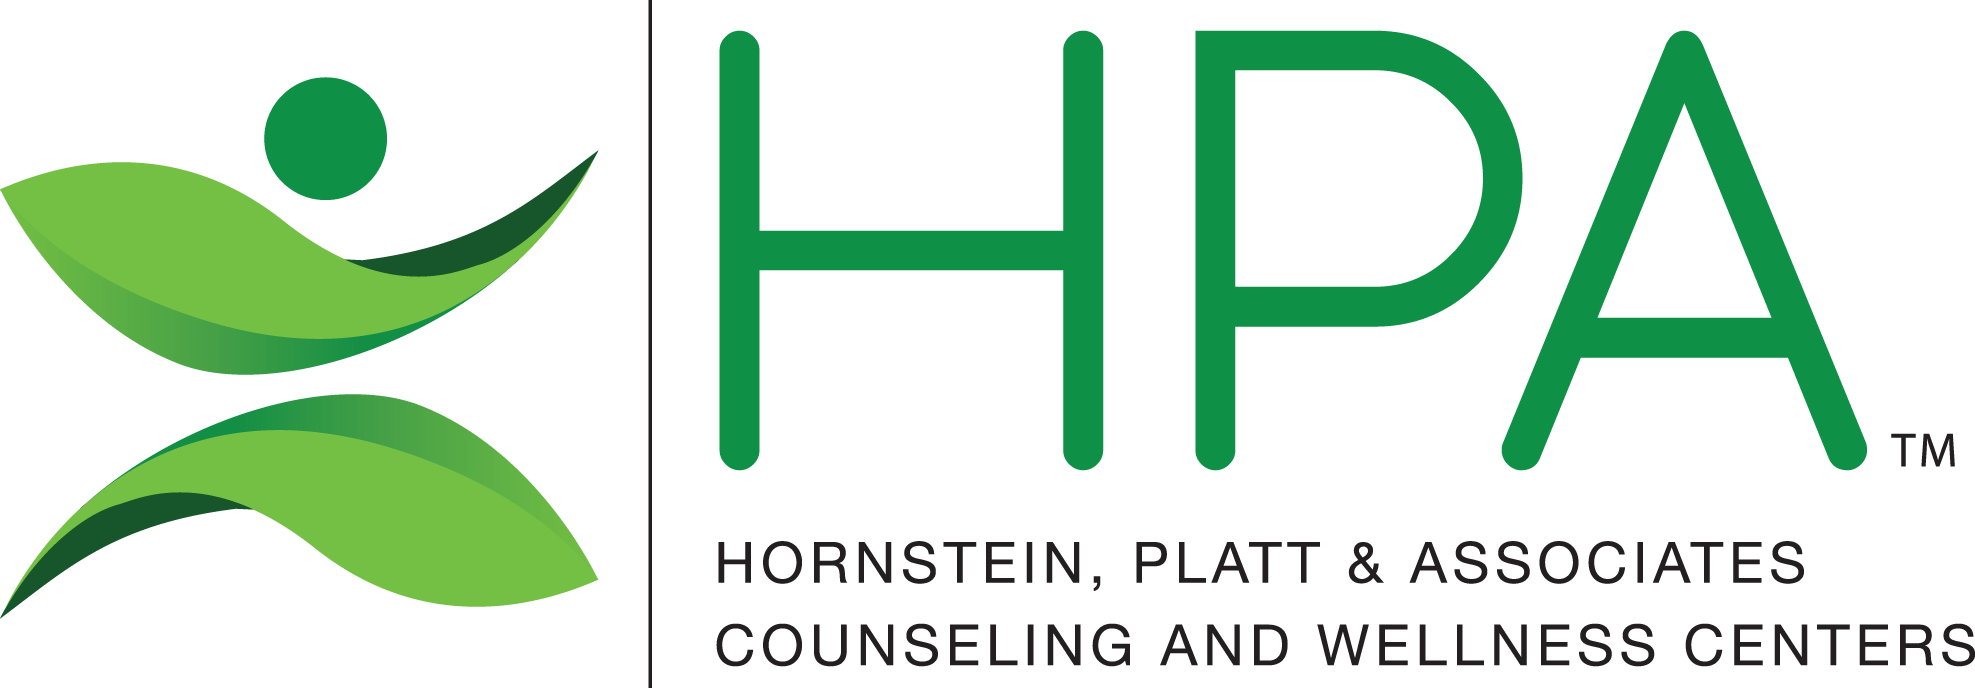 Hornstein, Platt and Associates Counseling and Wellness